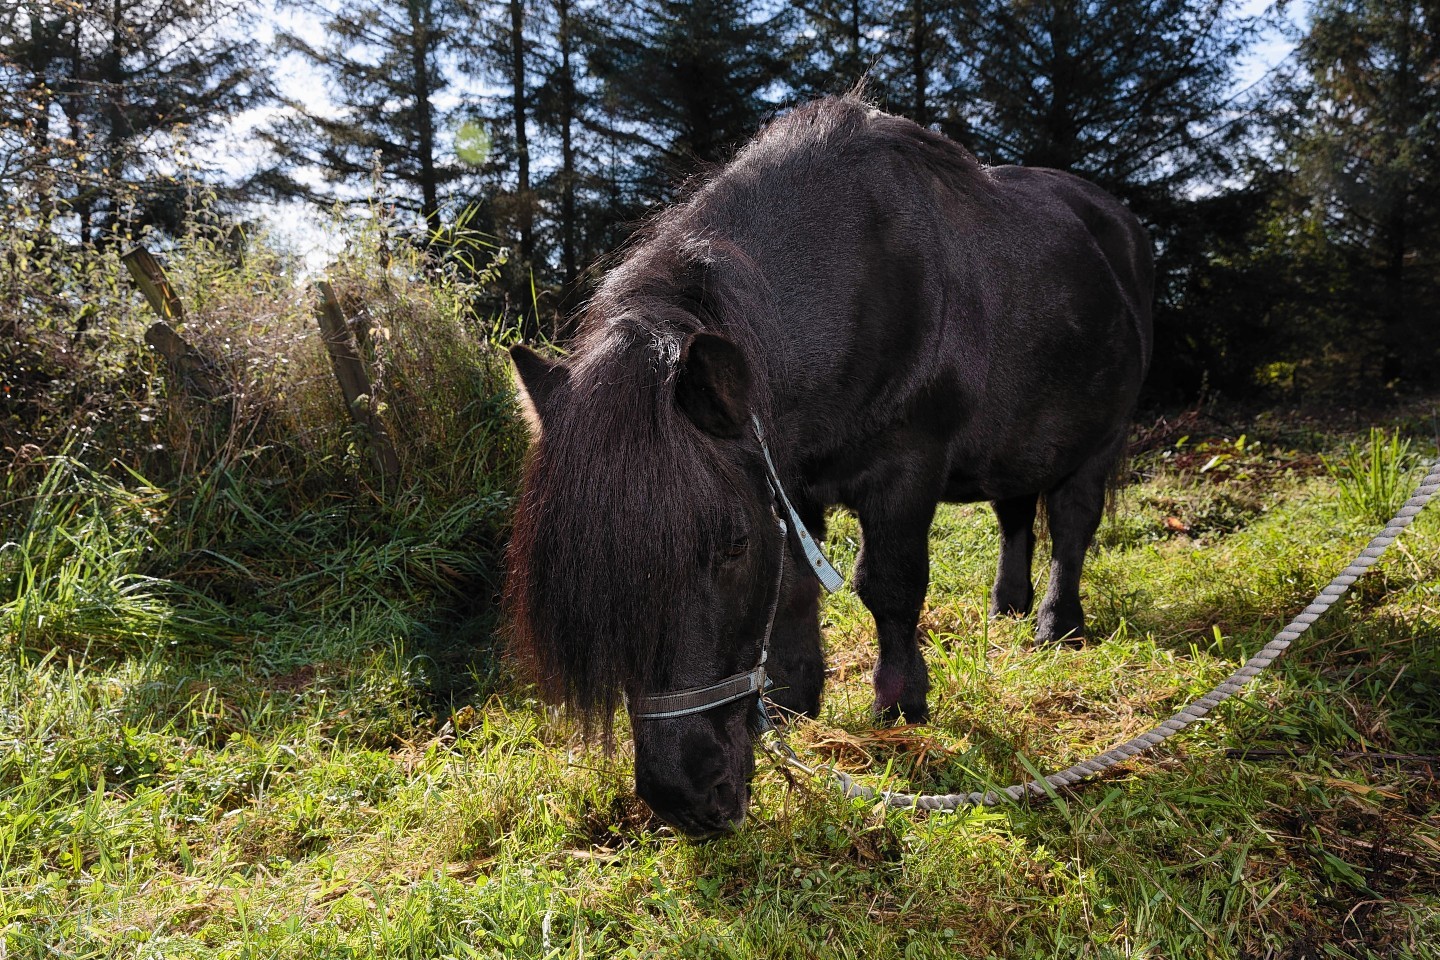 Inky the Shetland Pony, who lives at Halfpenny Farm